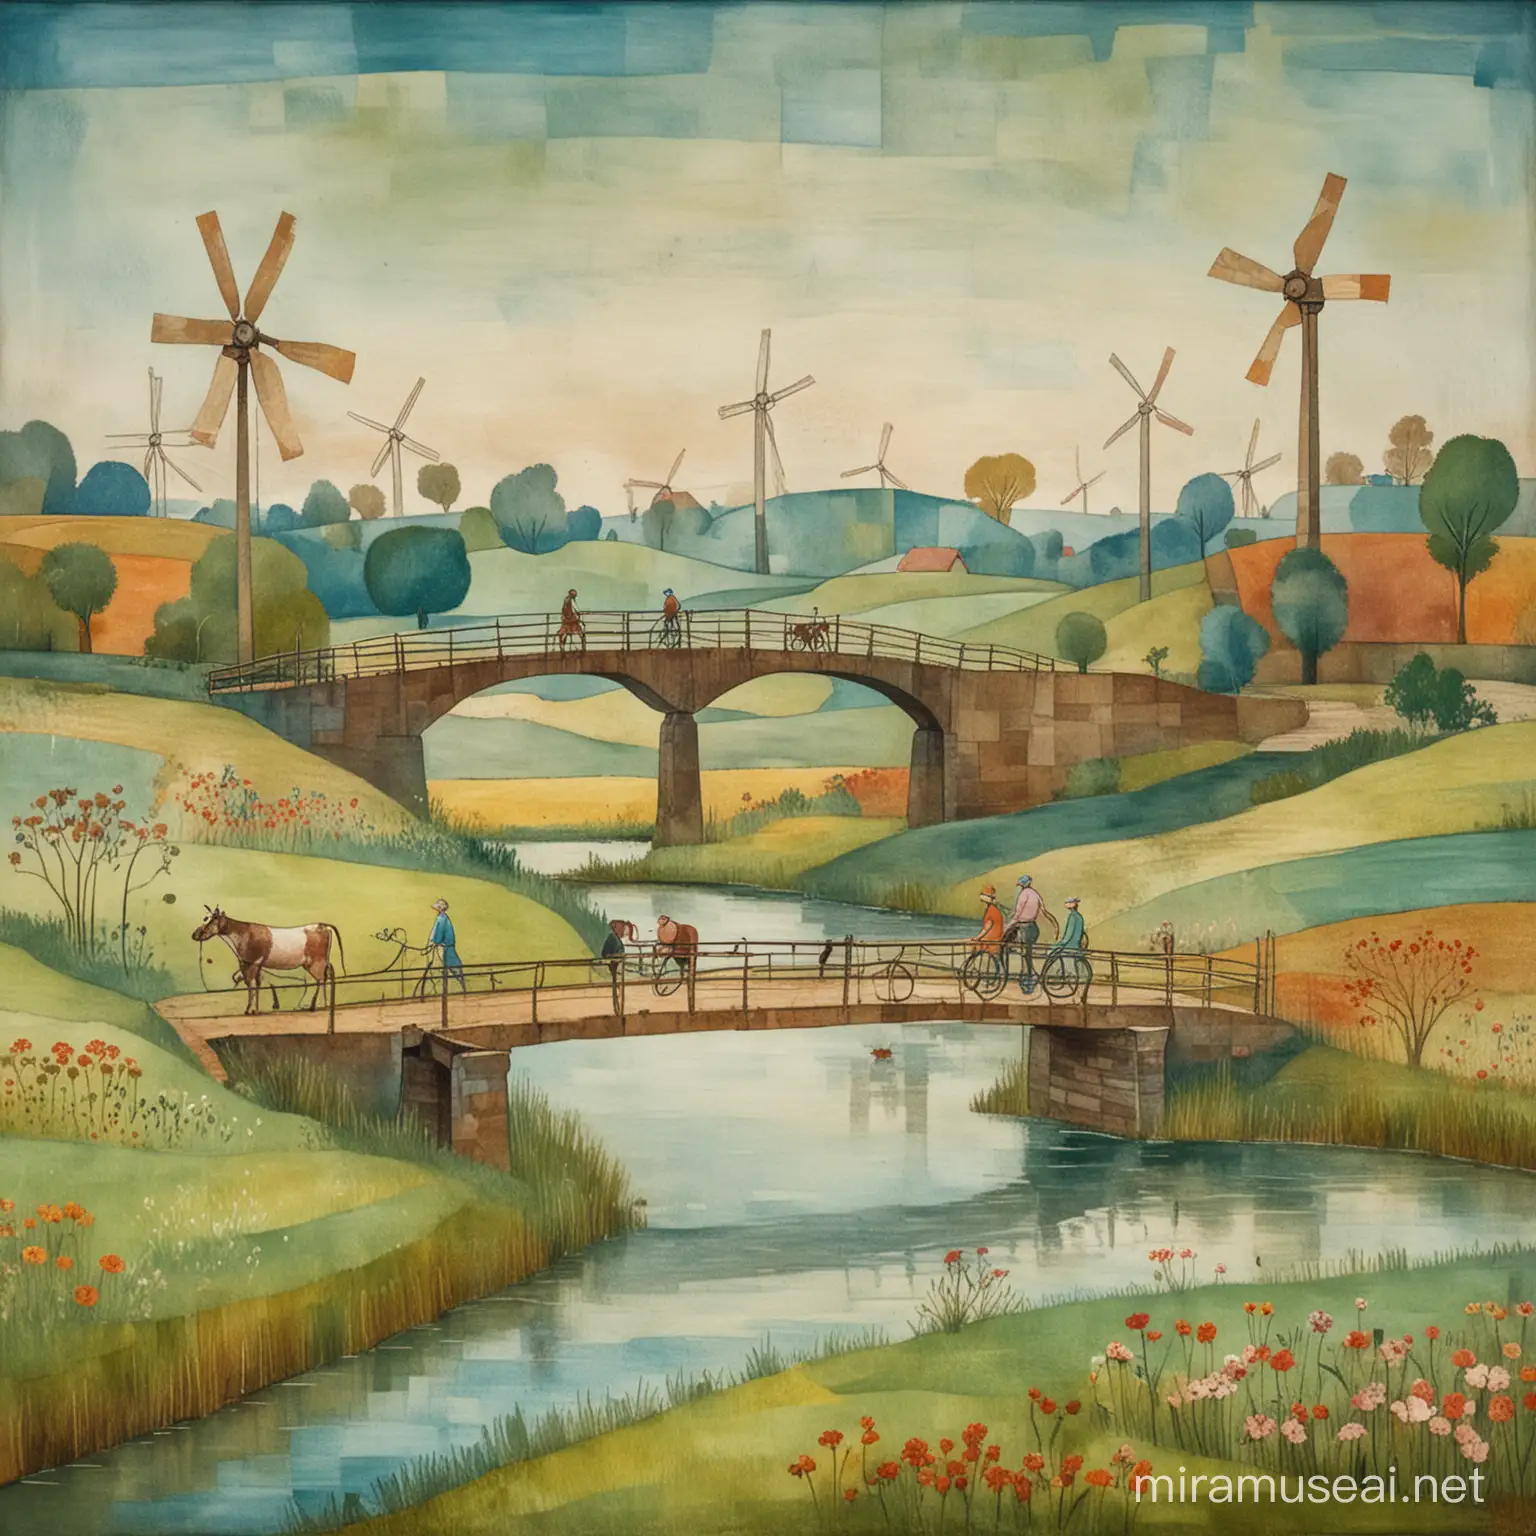 Eine Wiesenlandschaft mit einer Brücke und einem Mann und einer Frau, die mit ihrem Fahrrad darüber fahren, und ein paar Kühen und Windrädern im Stil von Paul Klee